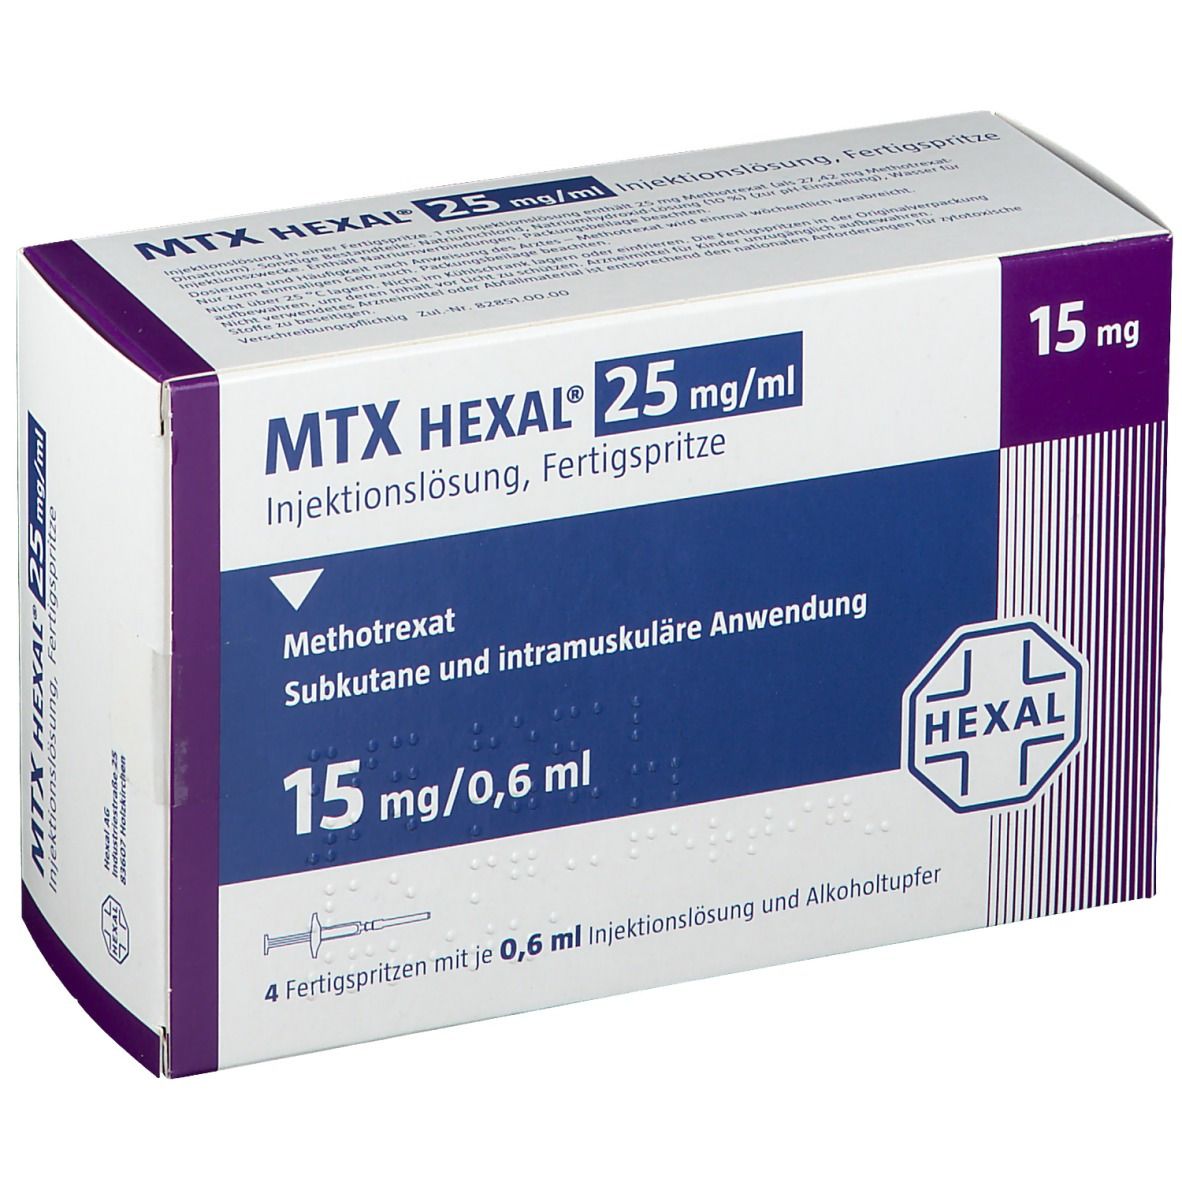 MTX HEXAL® 25 mg/ml